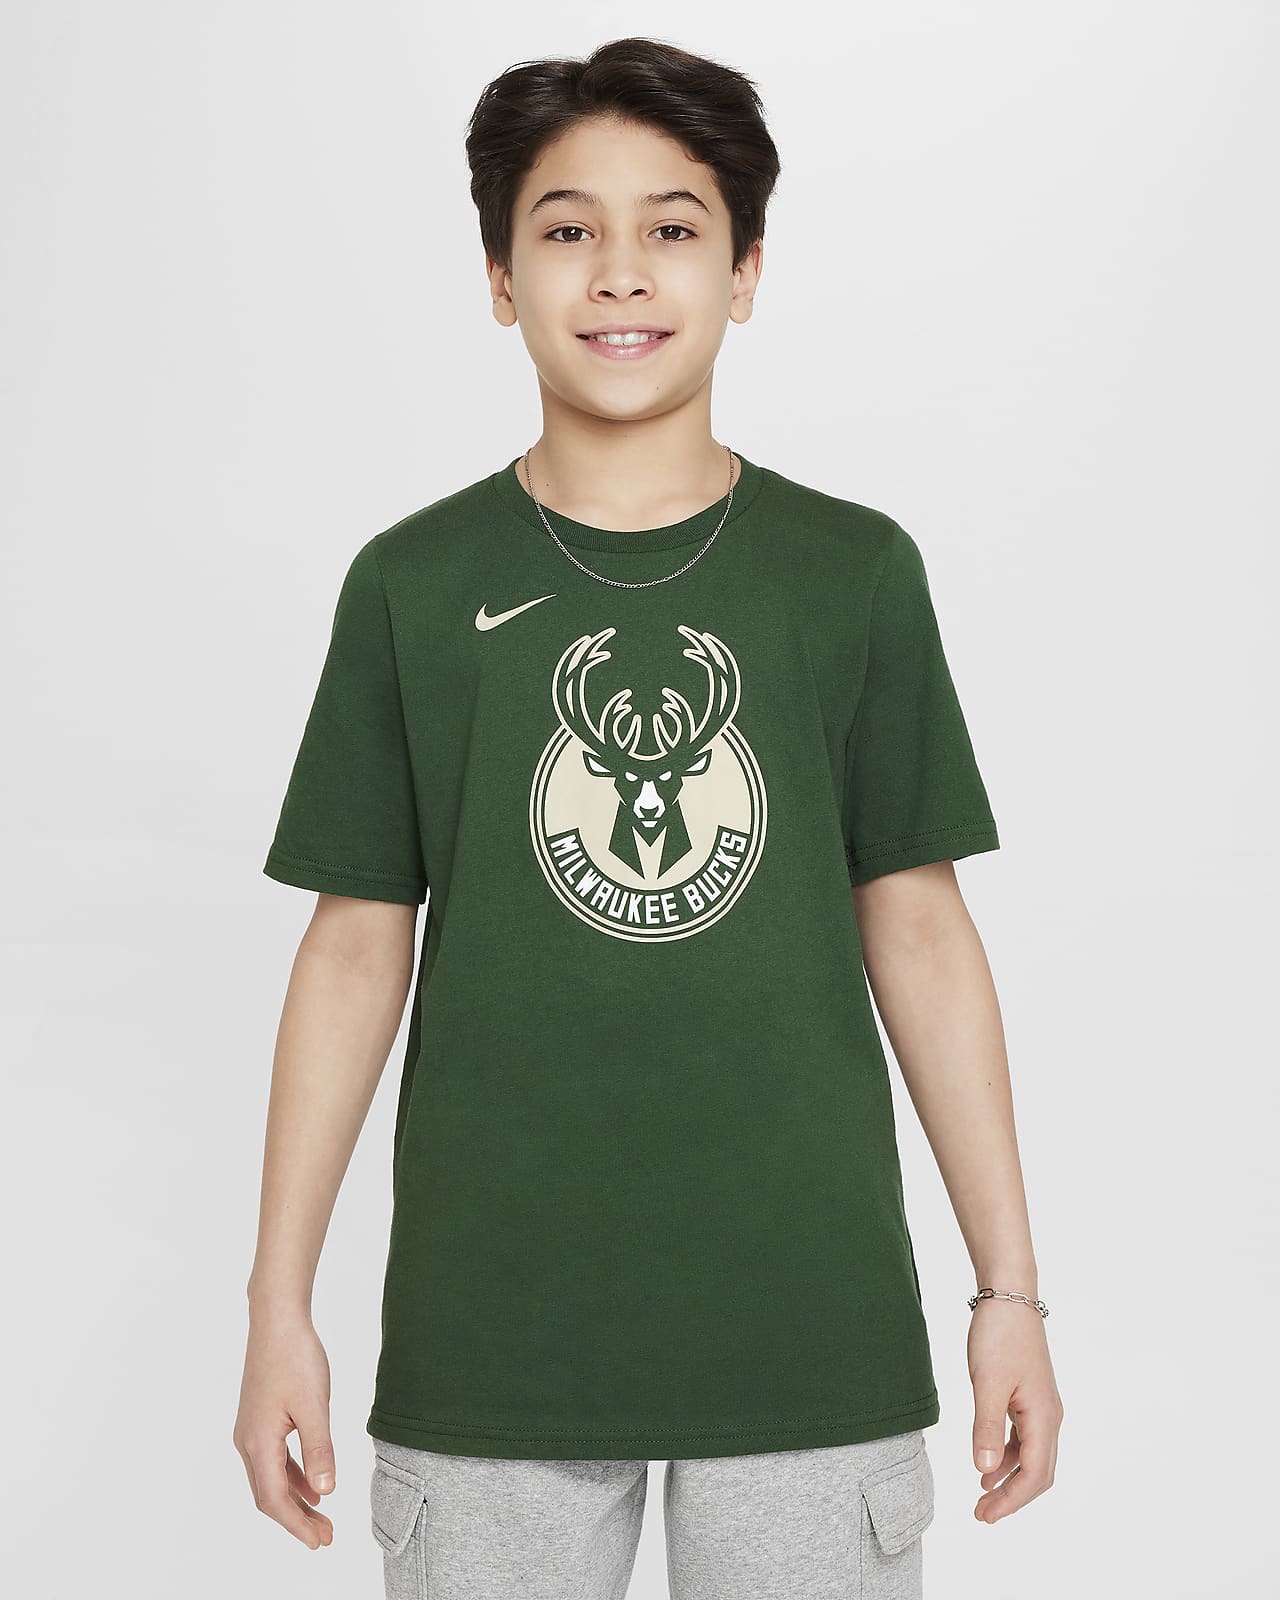 Milwaukee Bucks Essential Camiseta con logotipo Nike de la NBA - Niño